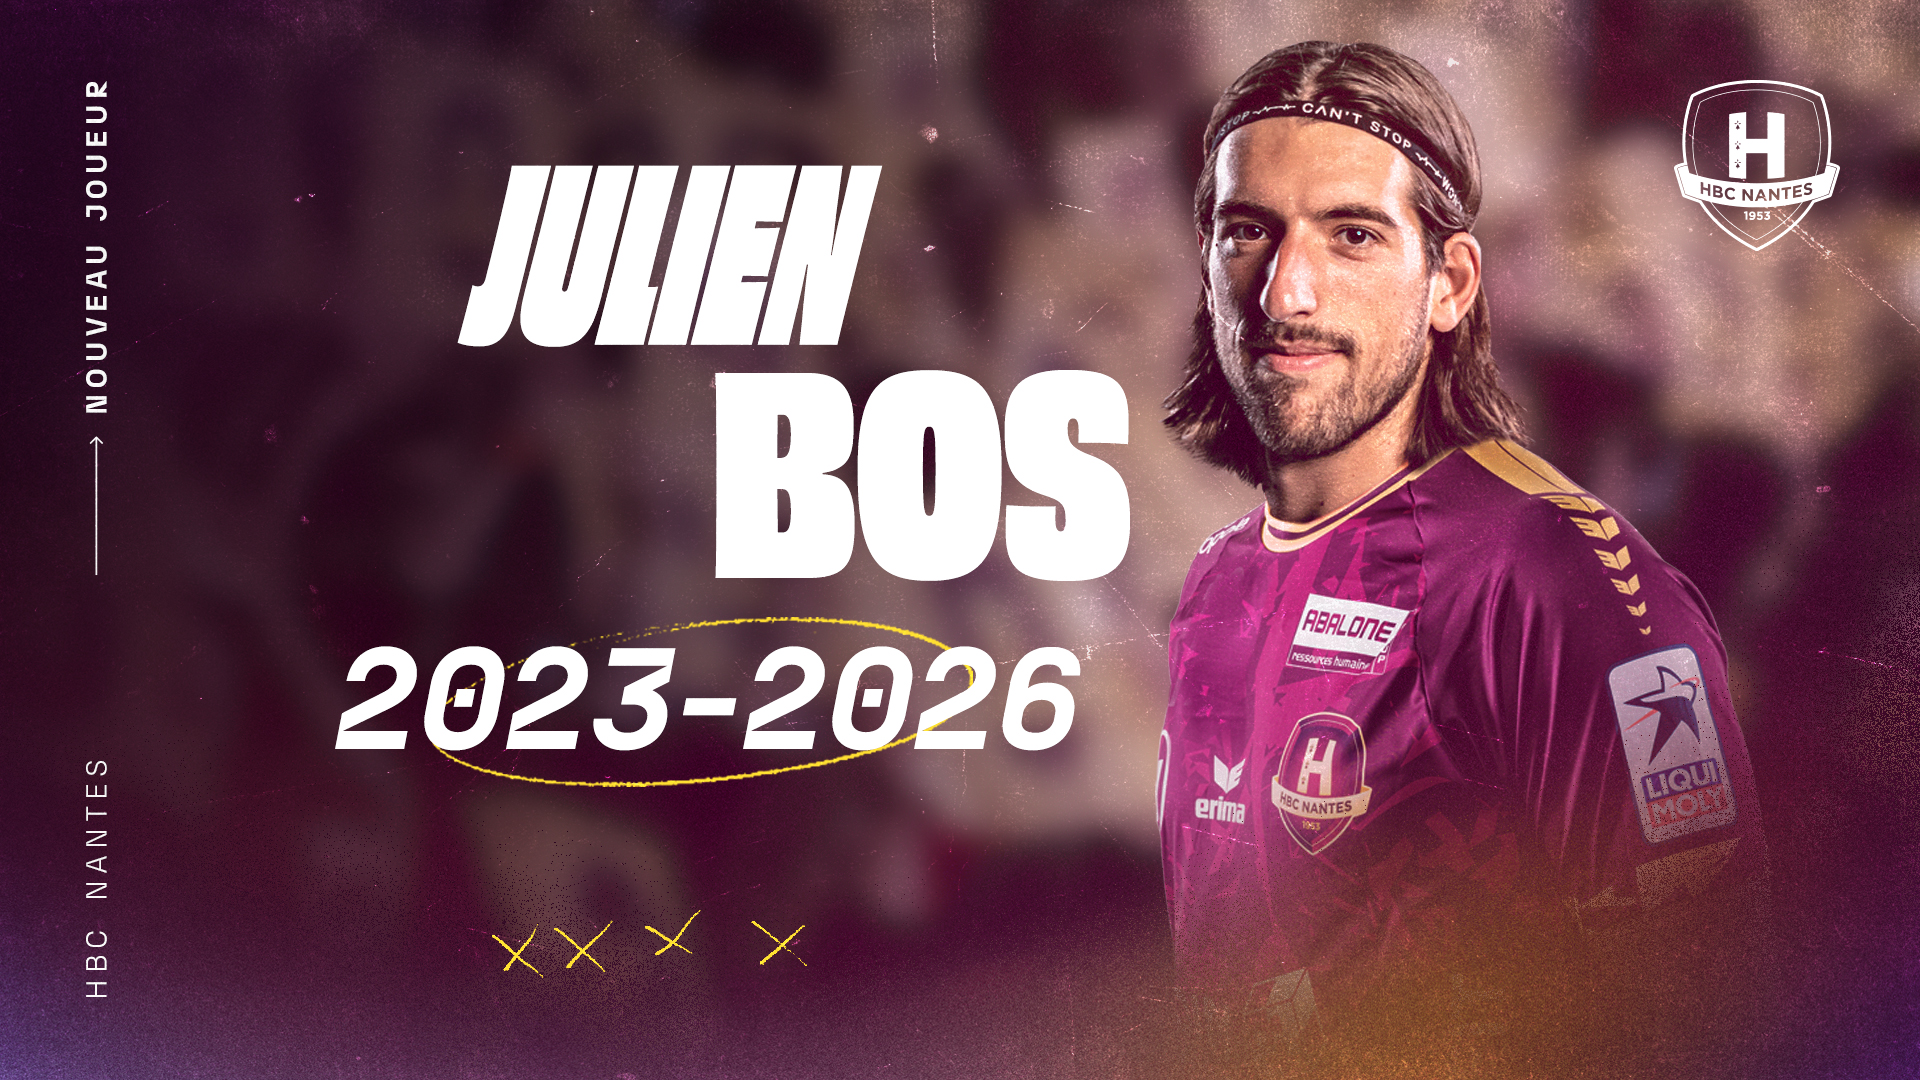 Officiel : Julien Bos au HBC Nantes la saison prochaine